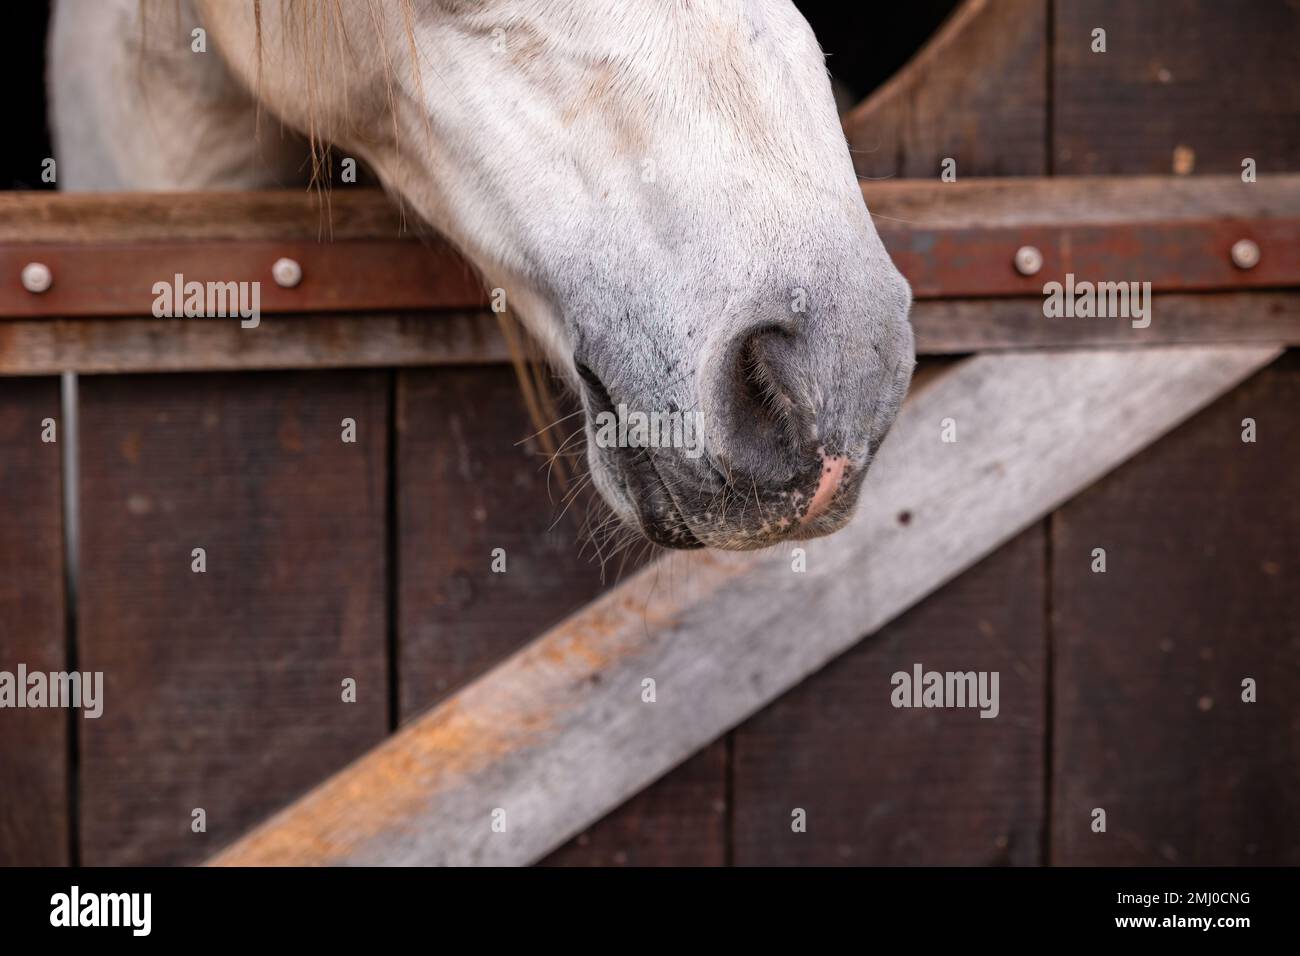 Carino naso di cavallo, dettagli di cavalli, animali equini, guardando fuori dalla scatola. Foto Stock